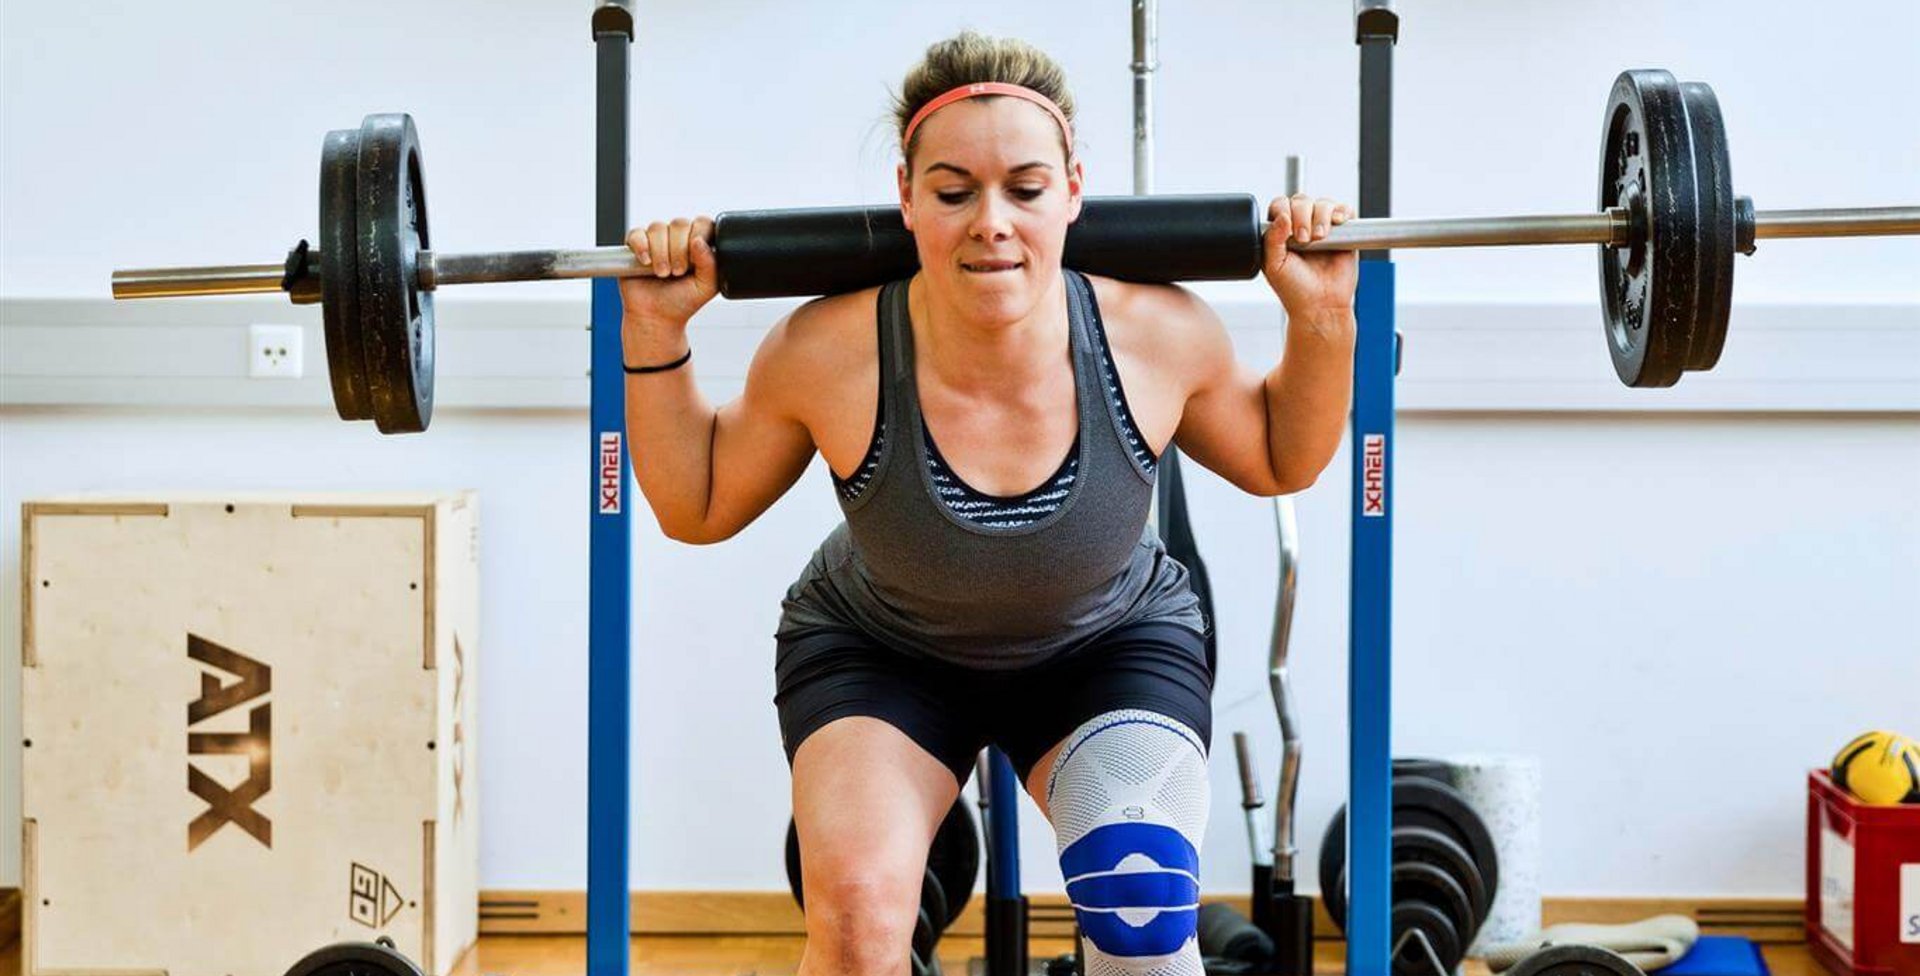 Andrea Limbacher stemmt Gewichte in einem Fitnessstudio. Sie trägt eine Bauerfeind GenuTrain Kniebandage am linken Knie, welche das Knie entlastet, stabilisiert und aktiviert.